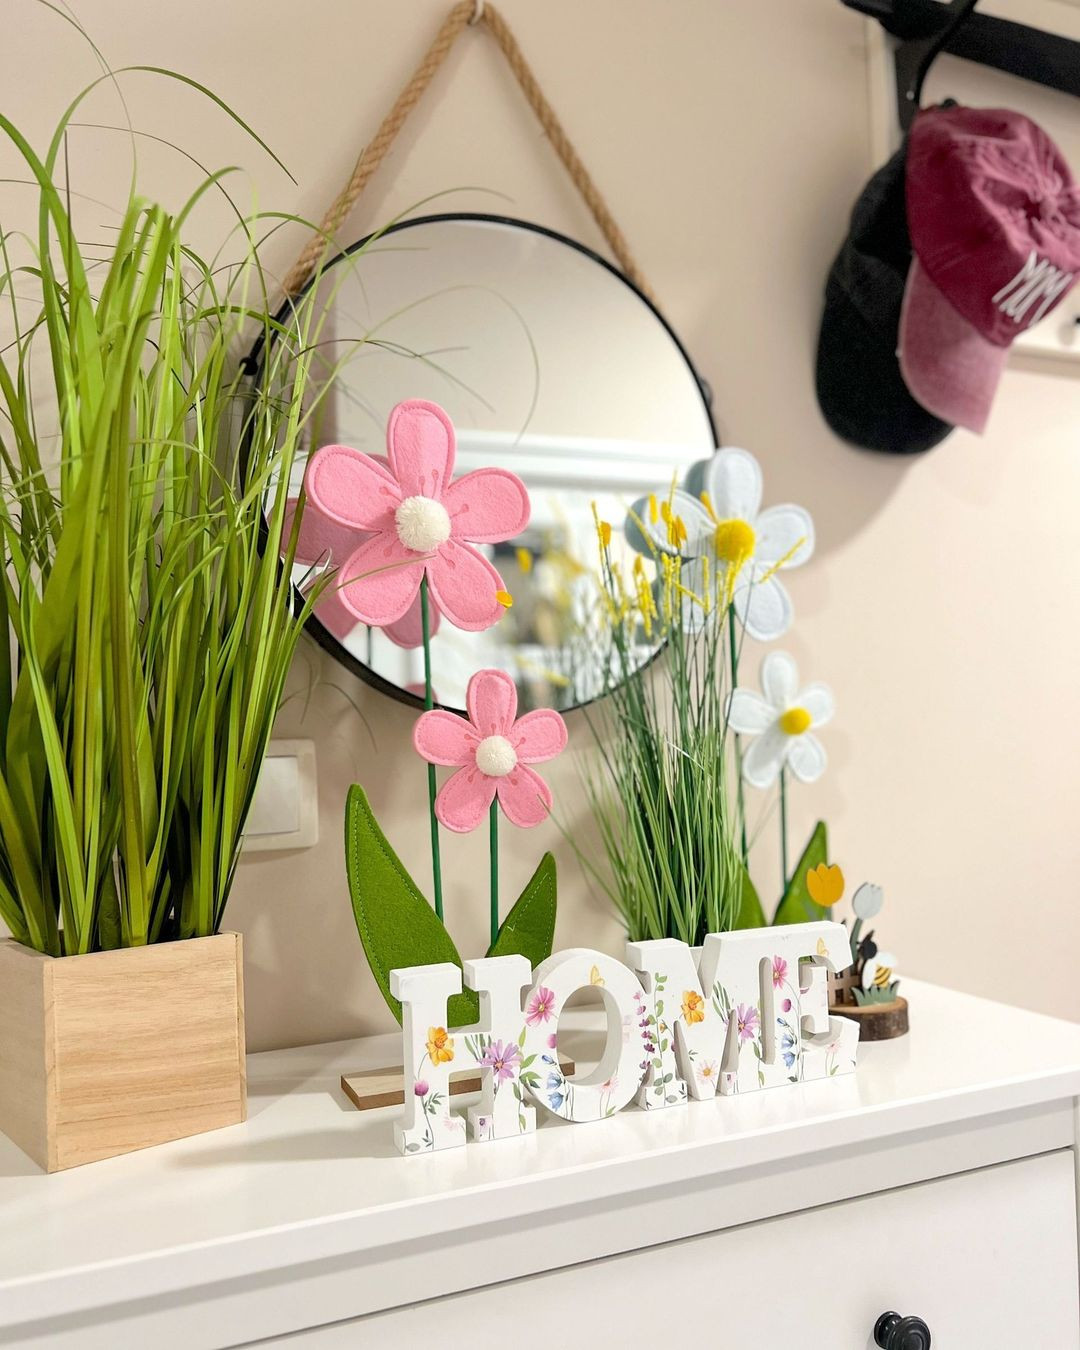 Inspirujte se jarní výzdobou bloggerky Ledy. 🌺⁣
⁣
Nápis HOME - 79,-⁣
Umělá tráva - 249,-⁣
Dekorativní plstěný květ - 99,-⁣
Umělá tráva s květináčem - 99,-⁣
⁣
Foto @ledaboss⁣
⁣
#kikcz #home #dekorace #deko #homedekor #kikdeko